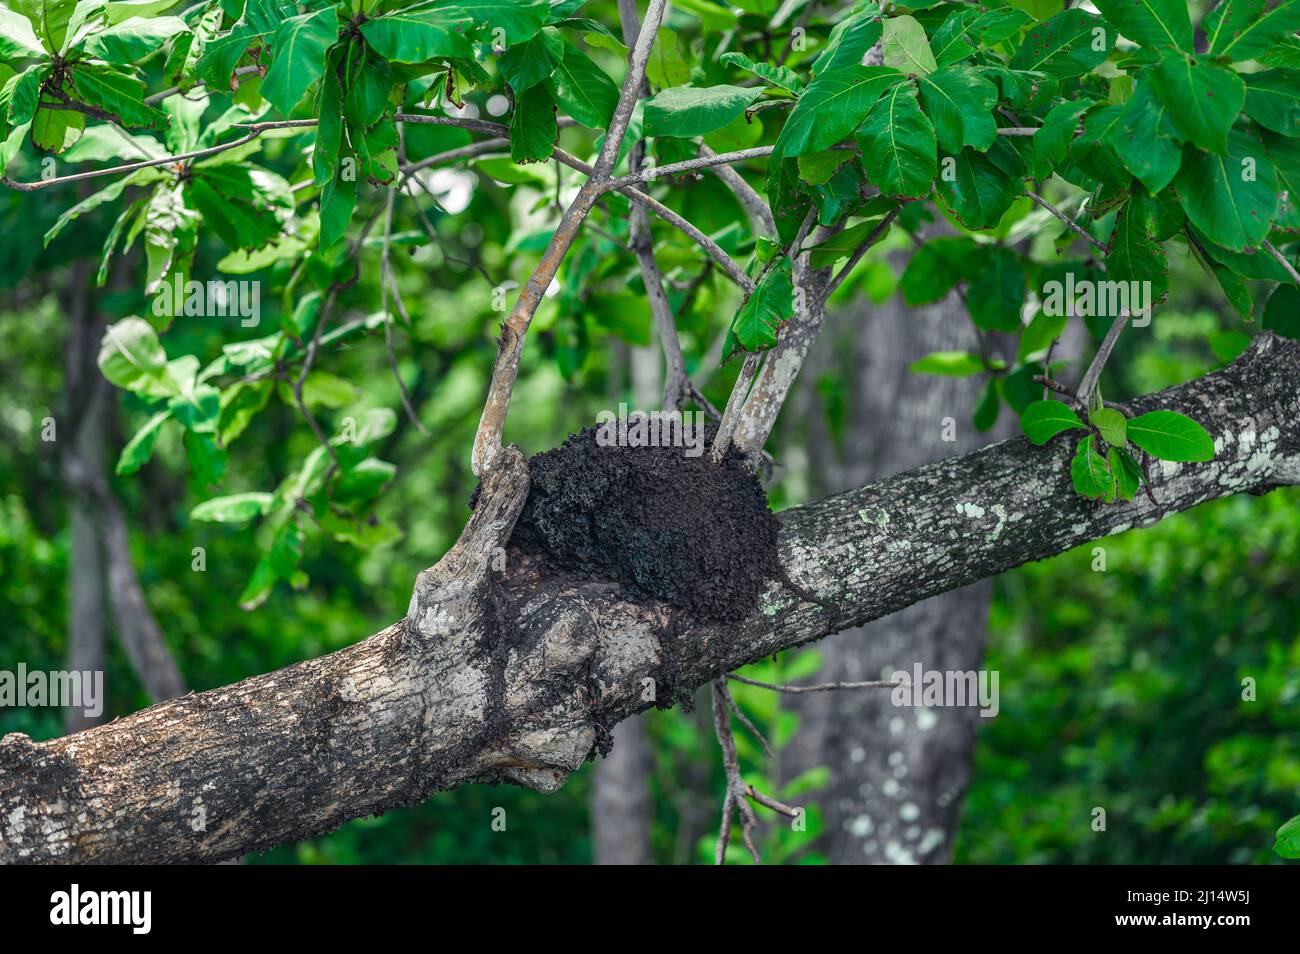 La photo montre un tronc d'arbre dans la jungle sauvage. Il y a un termite sur une plante exotique. La maison des Temites noires est faite d'un mélange de terre et d'argile. JE Banque D'Images